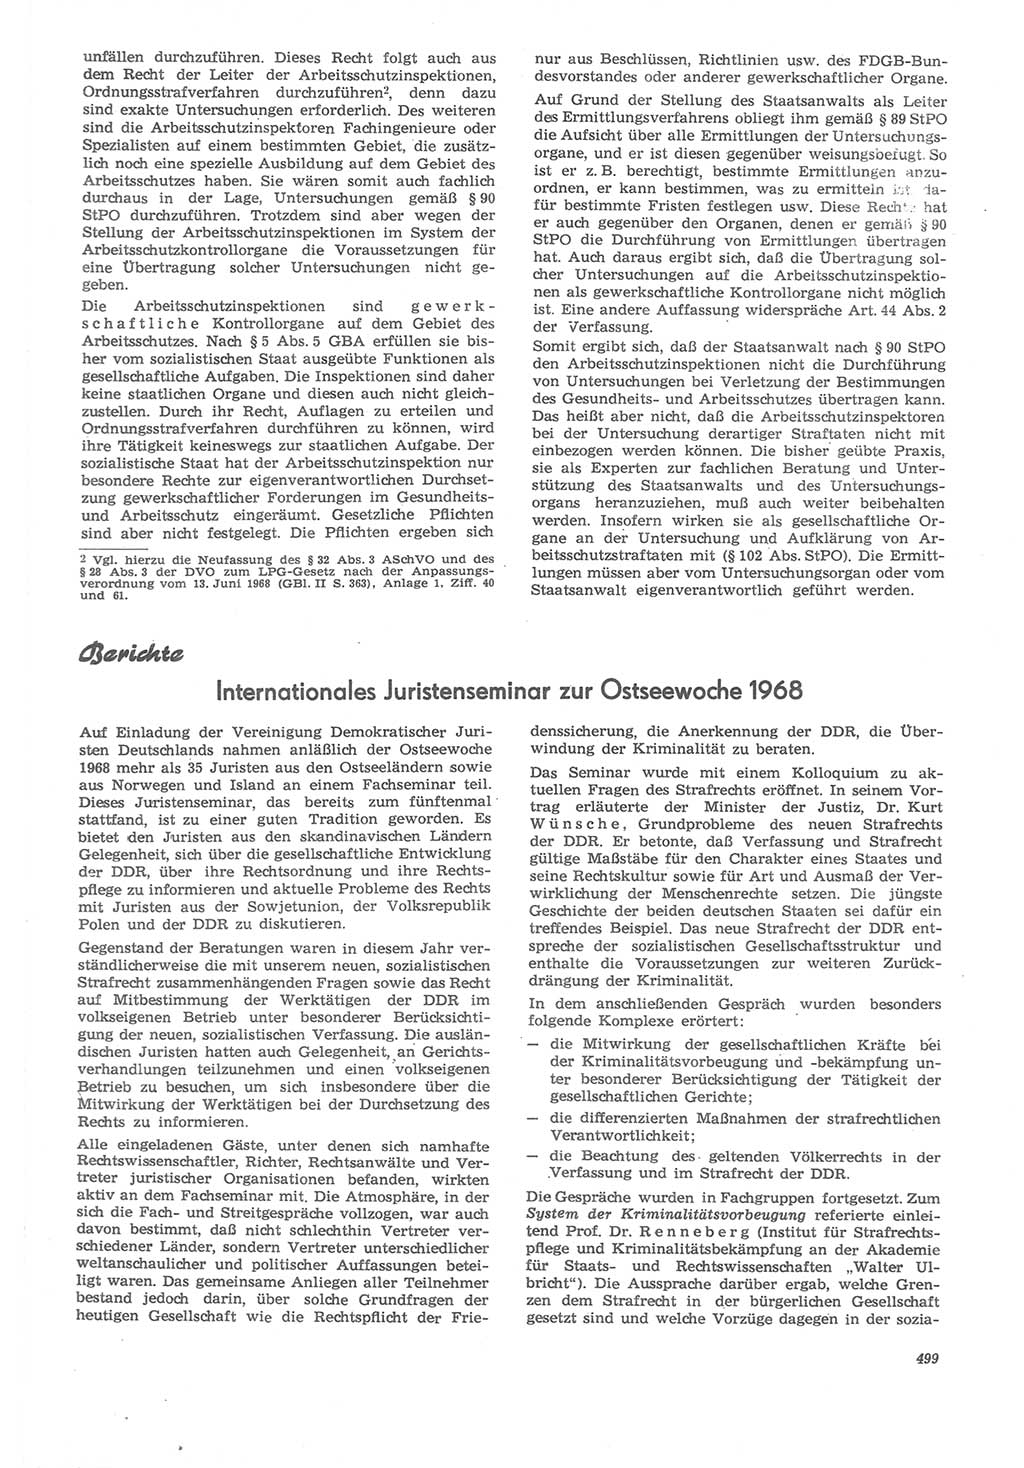 Neue Justiz (NJ), Zeitschrift für Recht und Rechtswissenschaft [Deutsche Demokratische Republik (DDR)], 22. Jahrgang 1968, Seite 499 (NJ DDR 1968, S. 499)